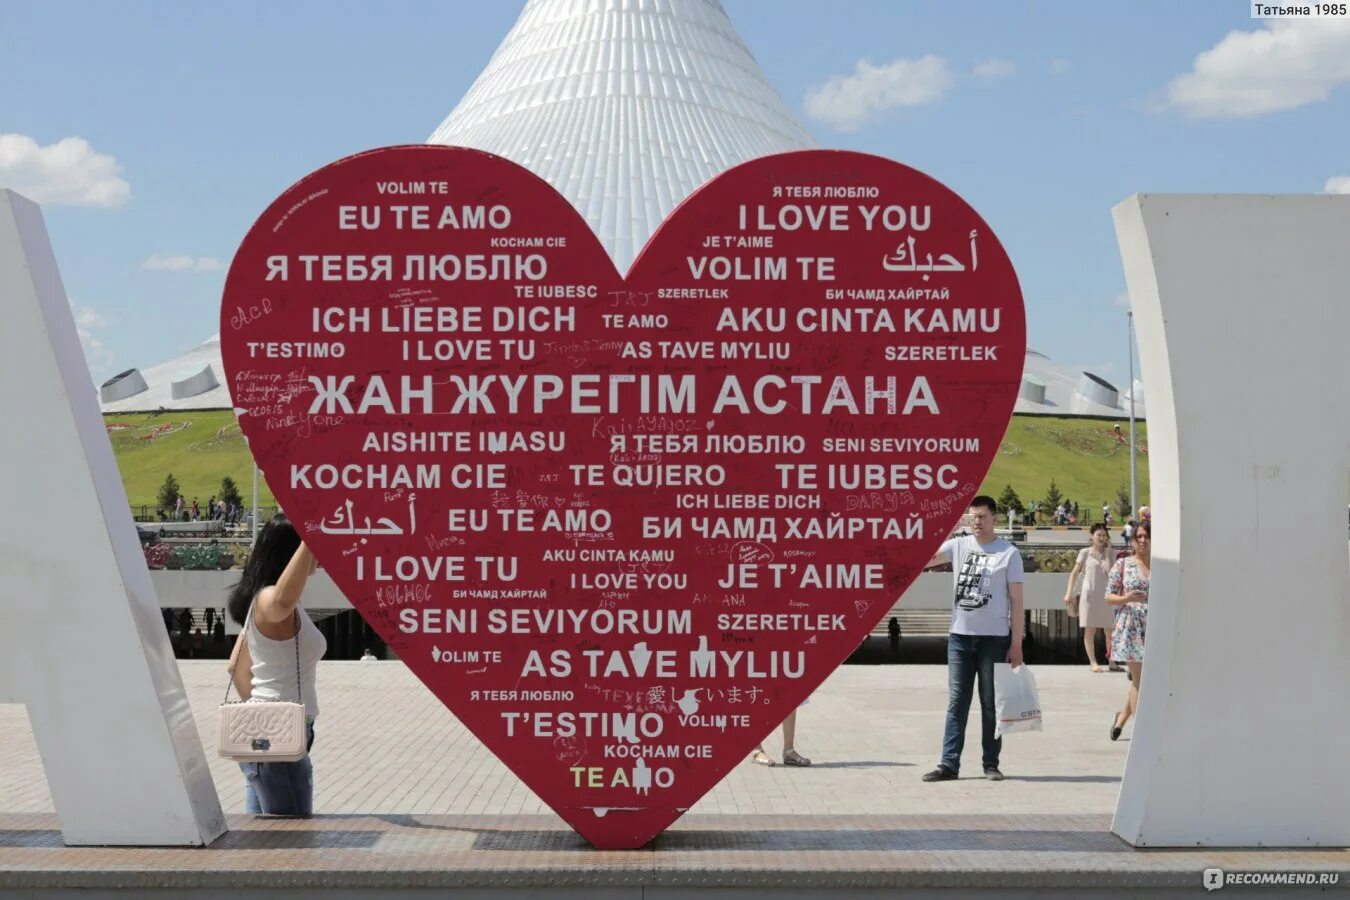 Здравствуй столица ты Вольная птица это Астана. Текст Здравствуй столица. Здравствуй столица ты Вольная птица это Астана текст.